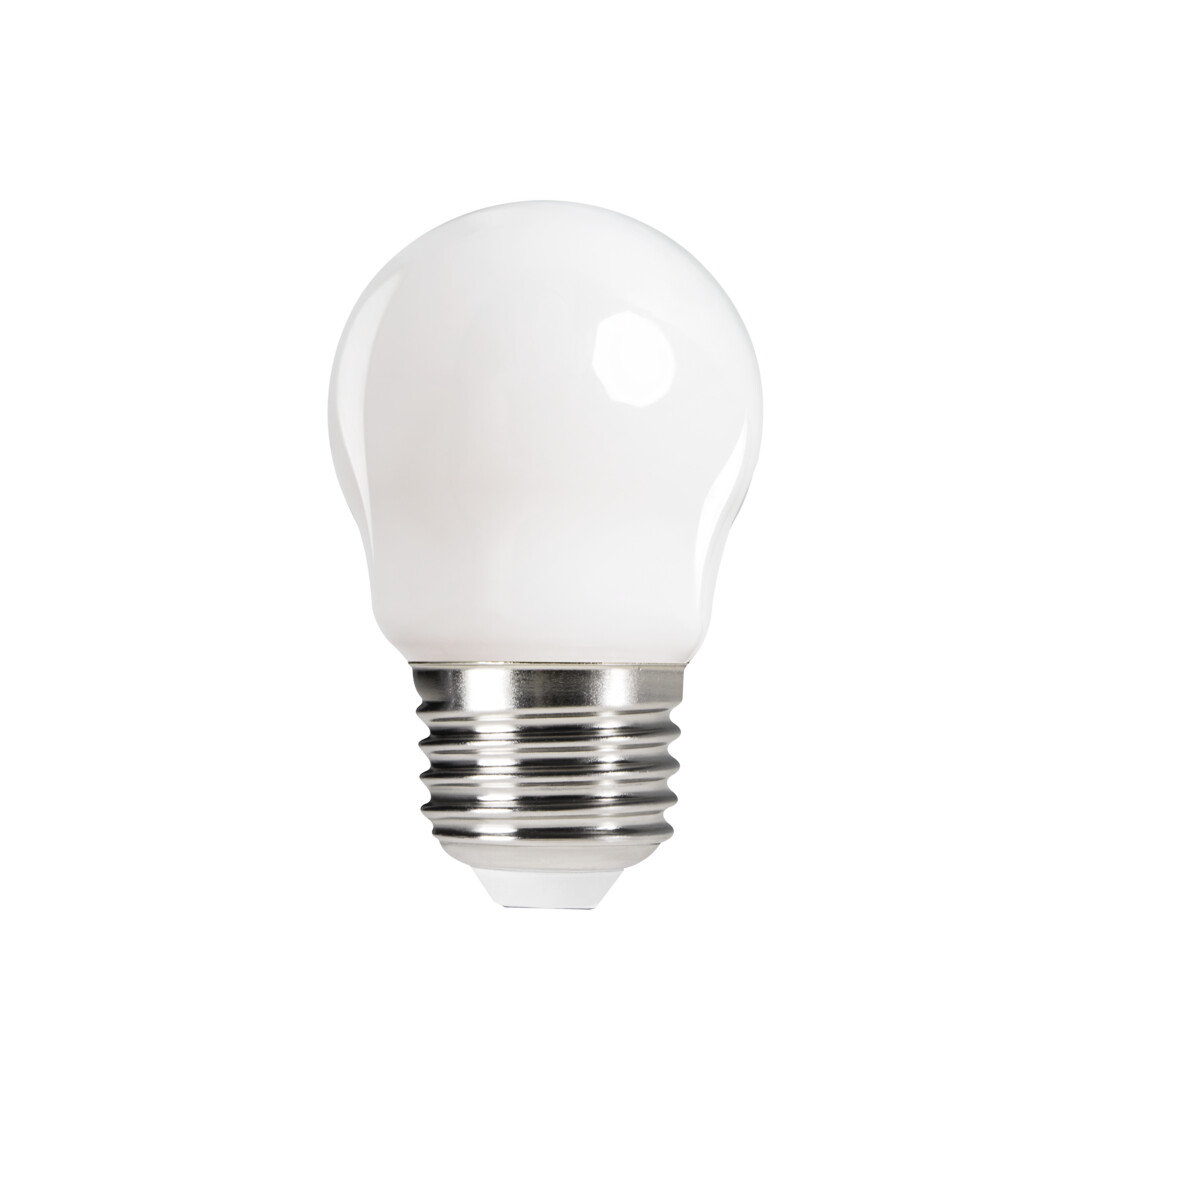 Heup gevaarlijk onwettig LED light source XLED G45 E27 6W-WW-M - Kanlux